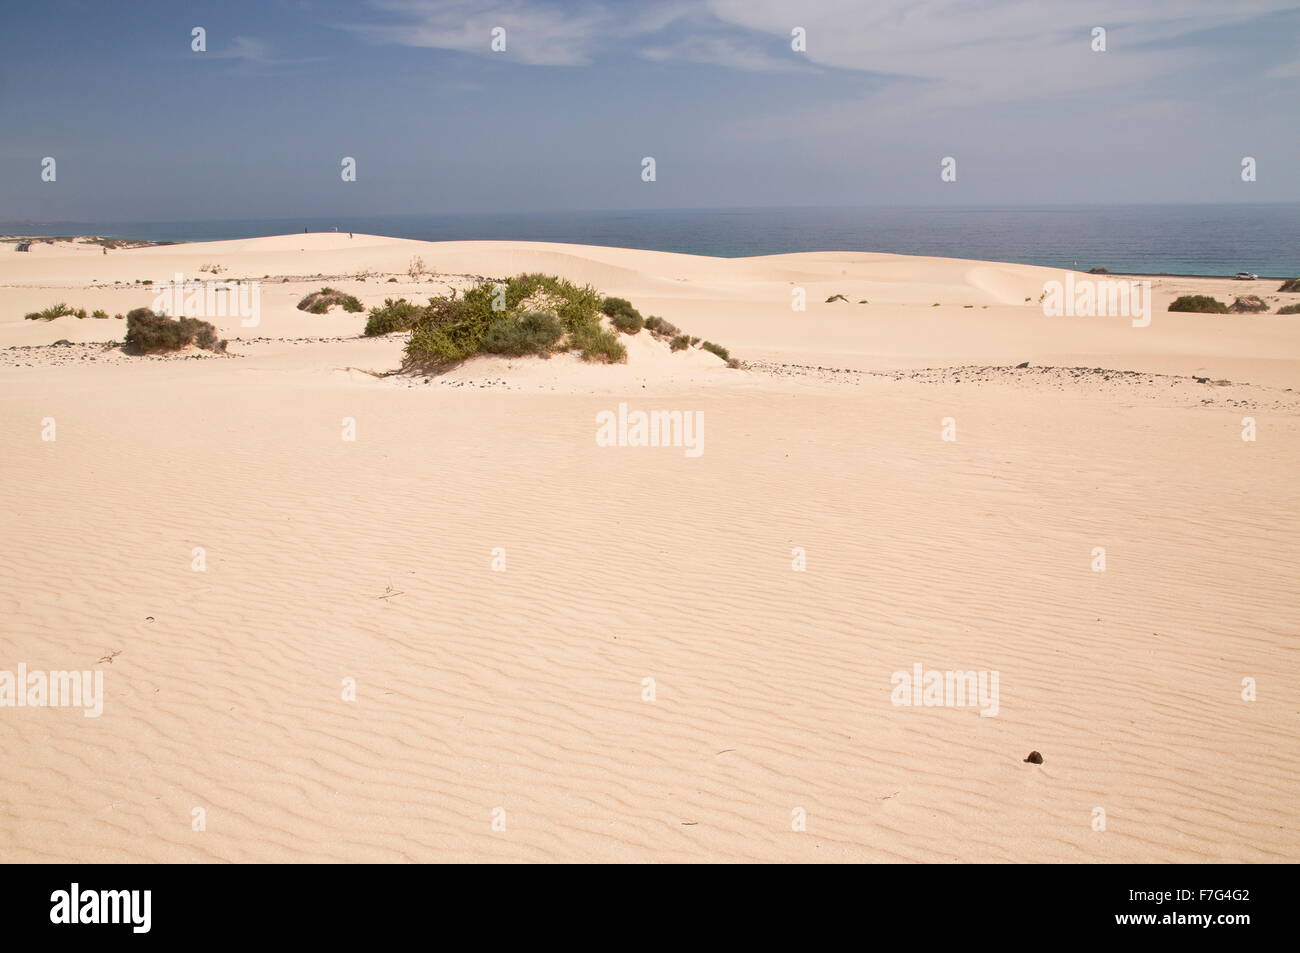 Sand-dunes in the Parque Natural de las dunas de Corralejo, Fuerteventura Stock Photo